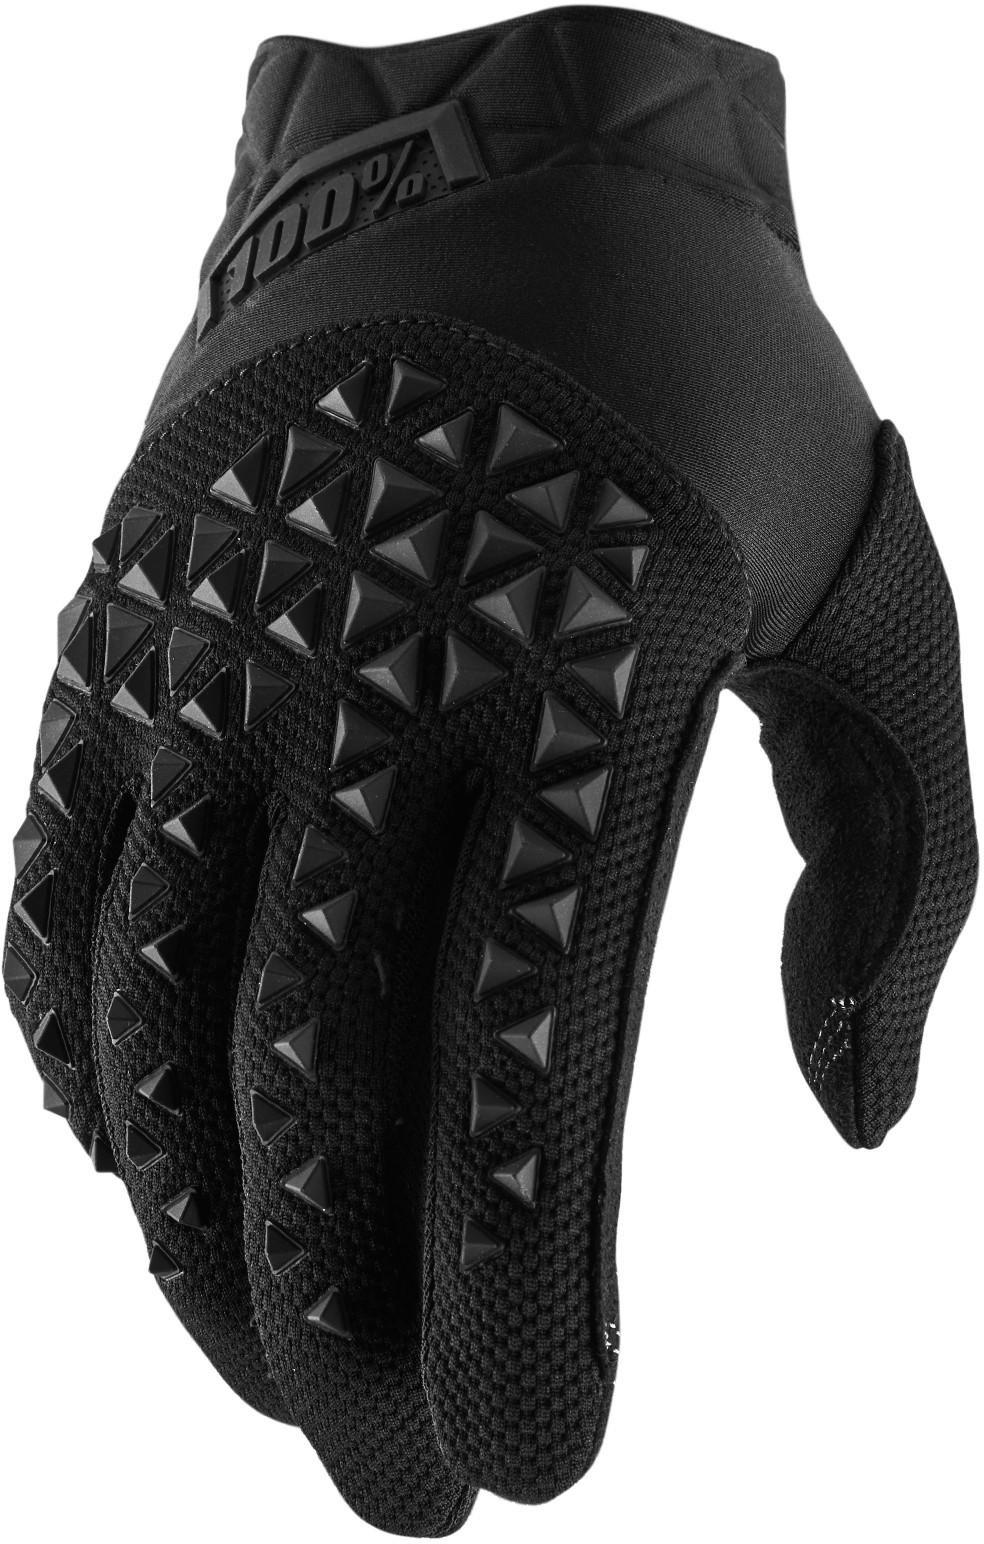 100% Geomatic Glove - Black